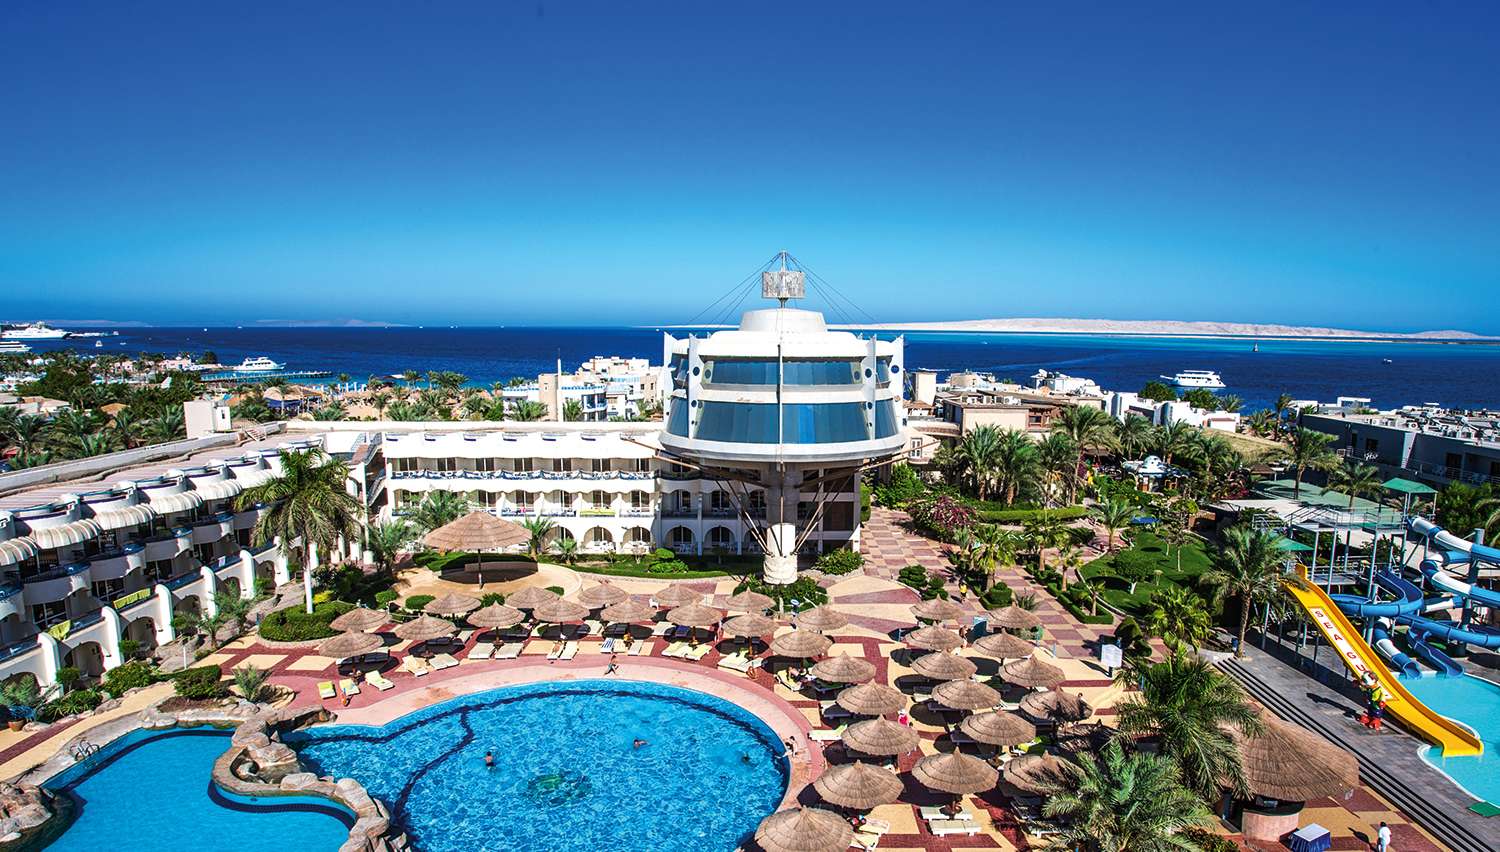 ارخص شركة لحجز فندق سيجال بيتش ريزورت الغردقة - بالانتقالات 2022 | Seagull Beach Resort